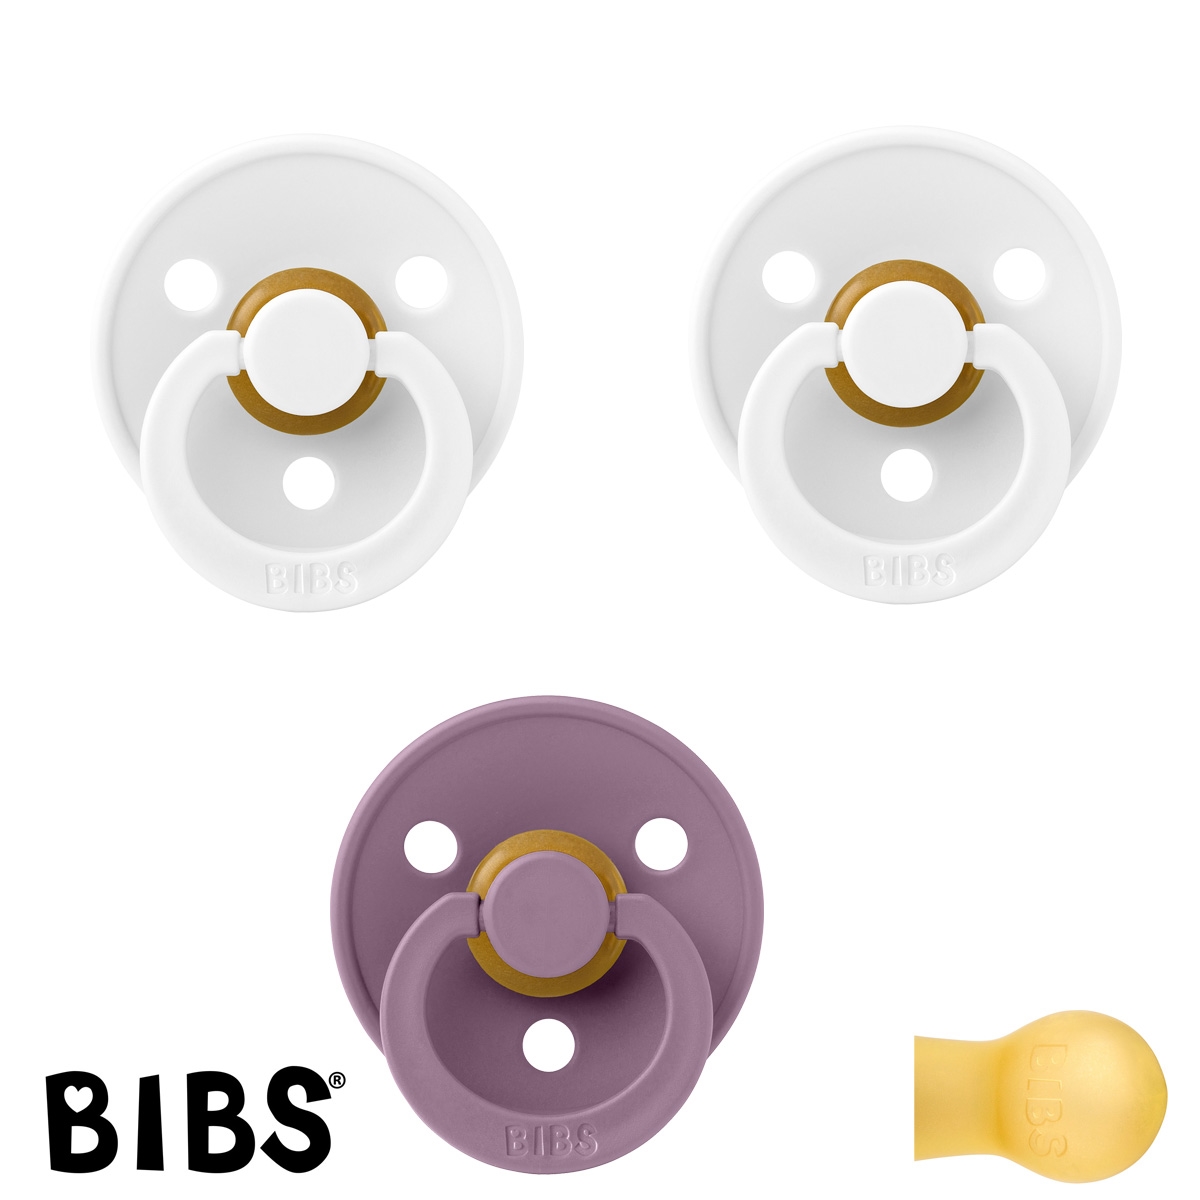 BIBS Colour Sutter med navn str2, 2 White, 1 Mauve, Runde latex, Pakke med 3 sutter